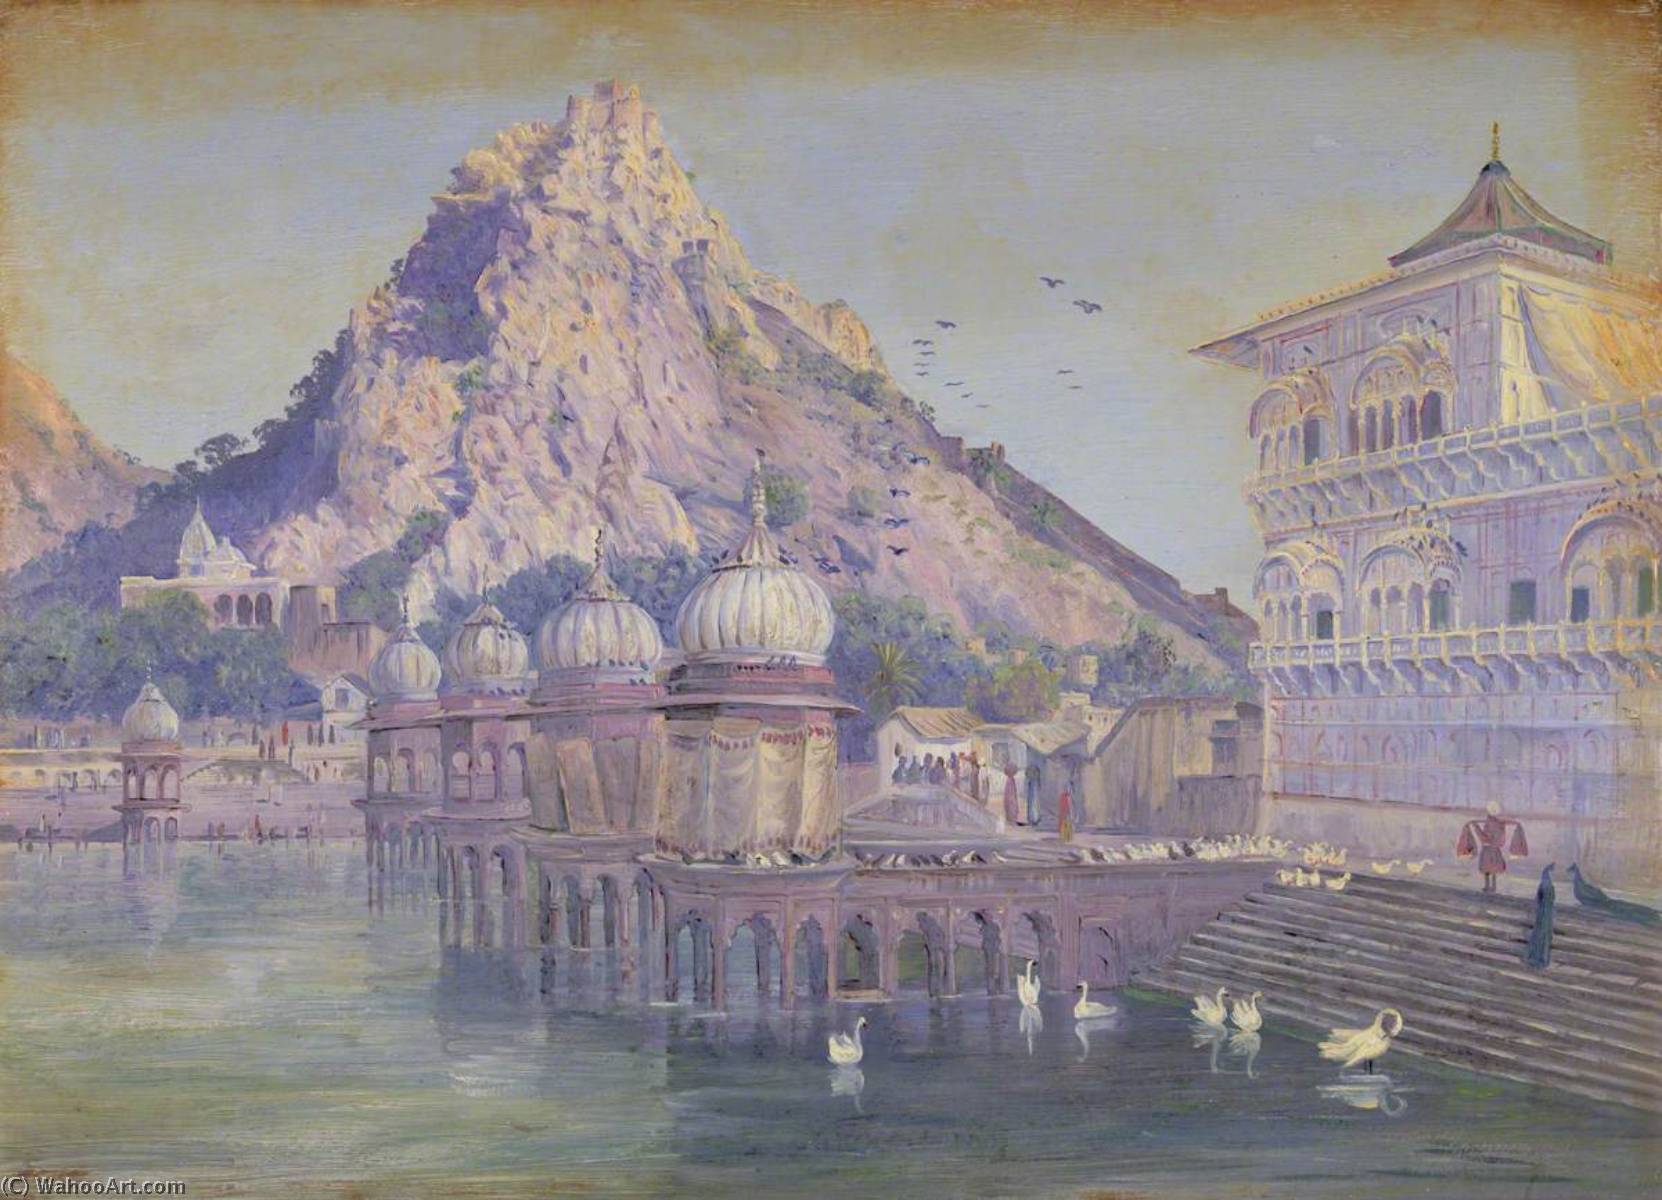 Achat Reproductions De Peintures Ulwar, Inde. Novr. 1878 `, 1878 de Marianne North (1830-1890, United Kingdom) | ArtsDot.com